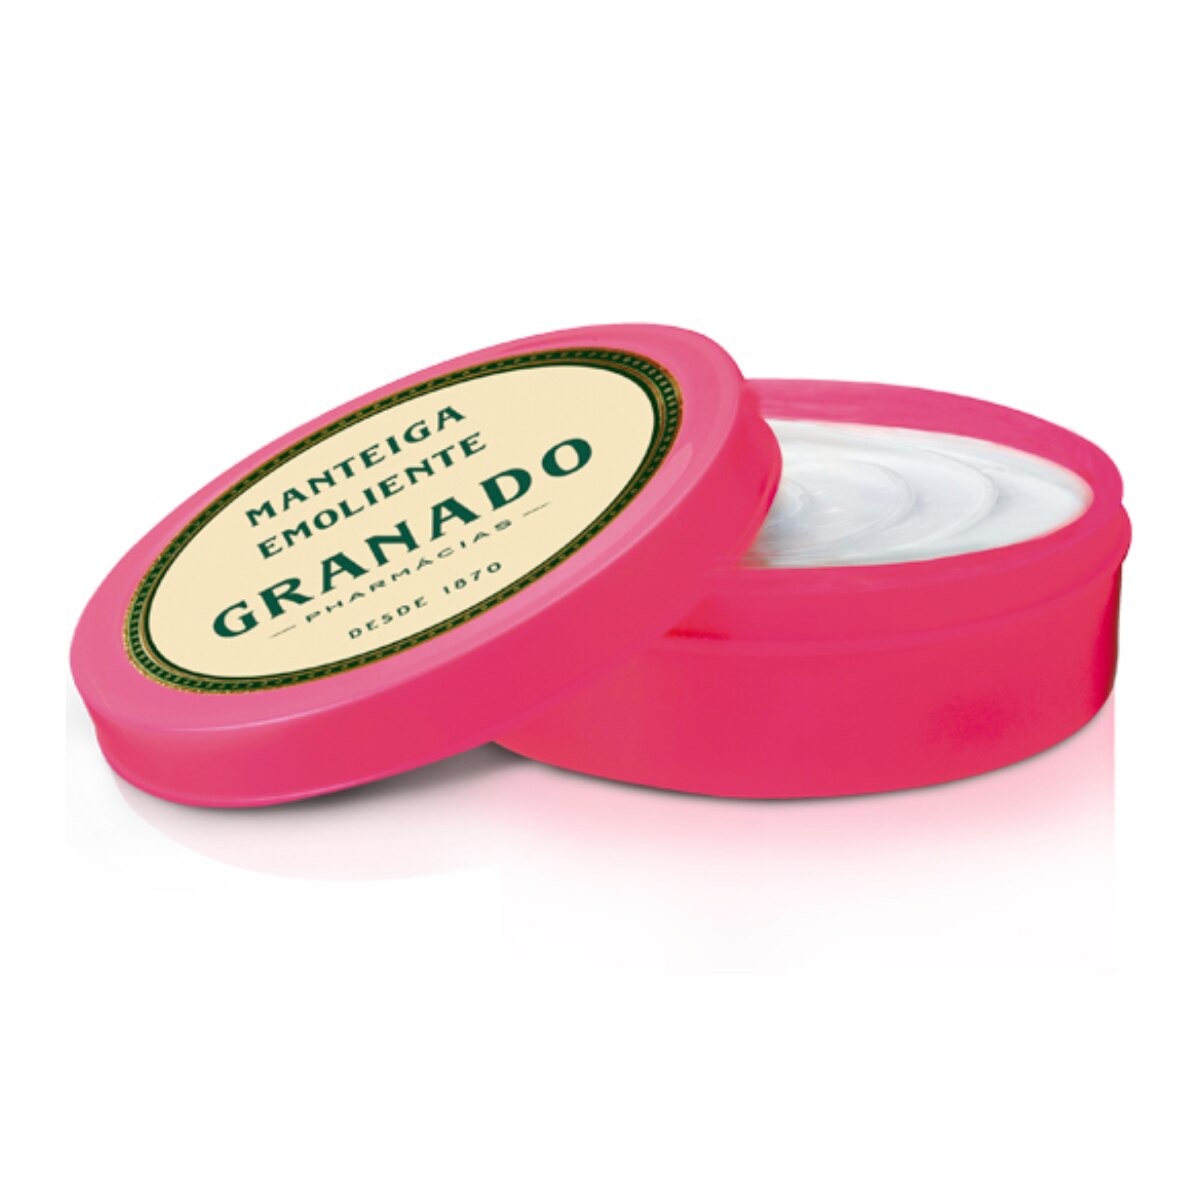 Manteiga Emoliente Granado Pink 60g